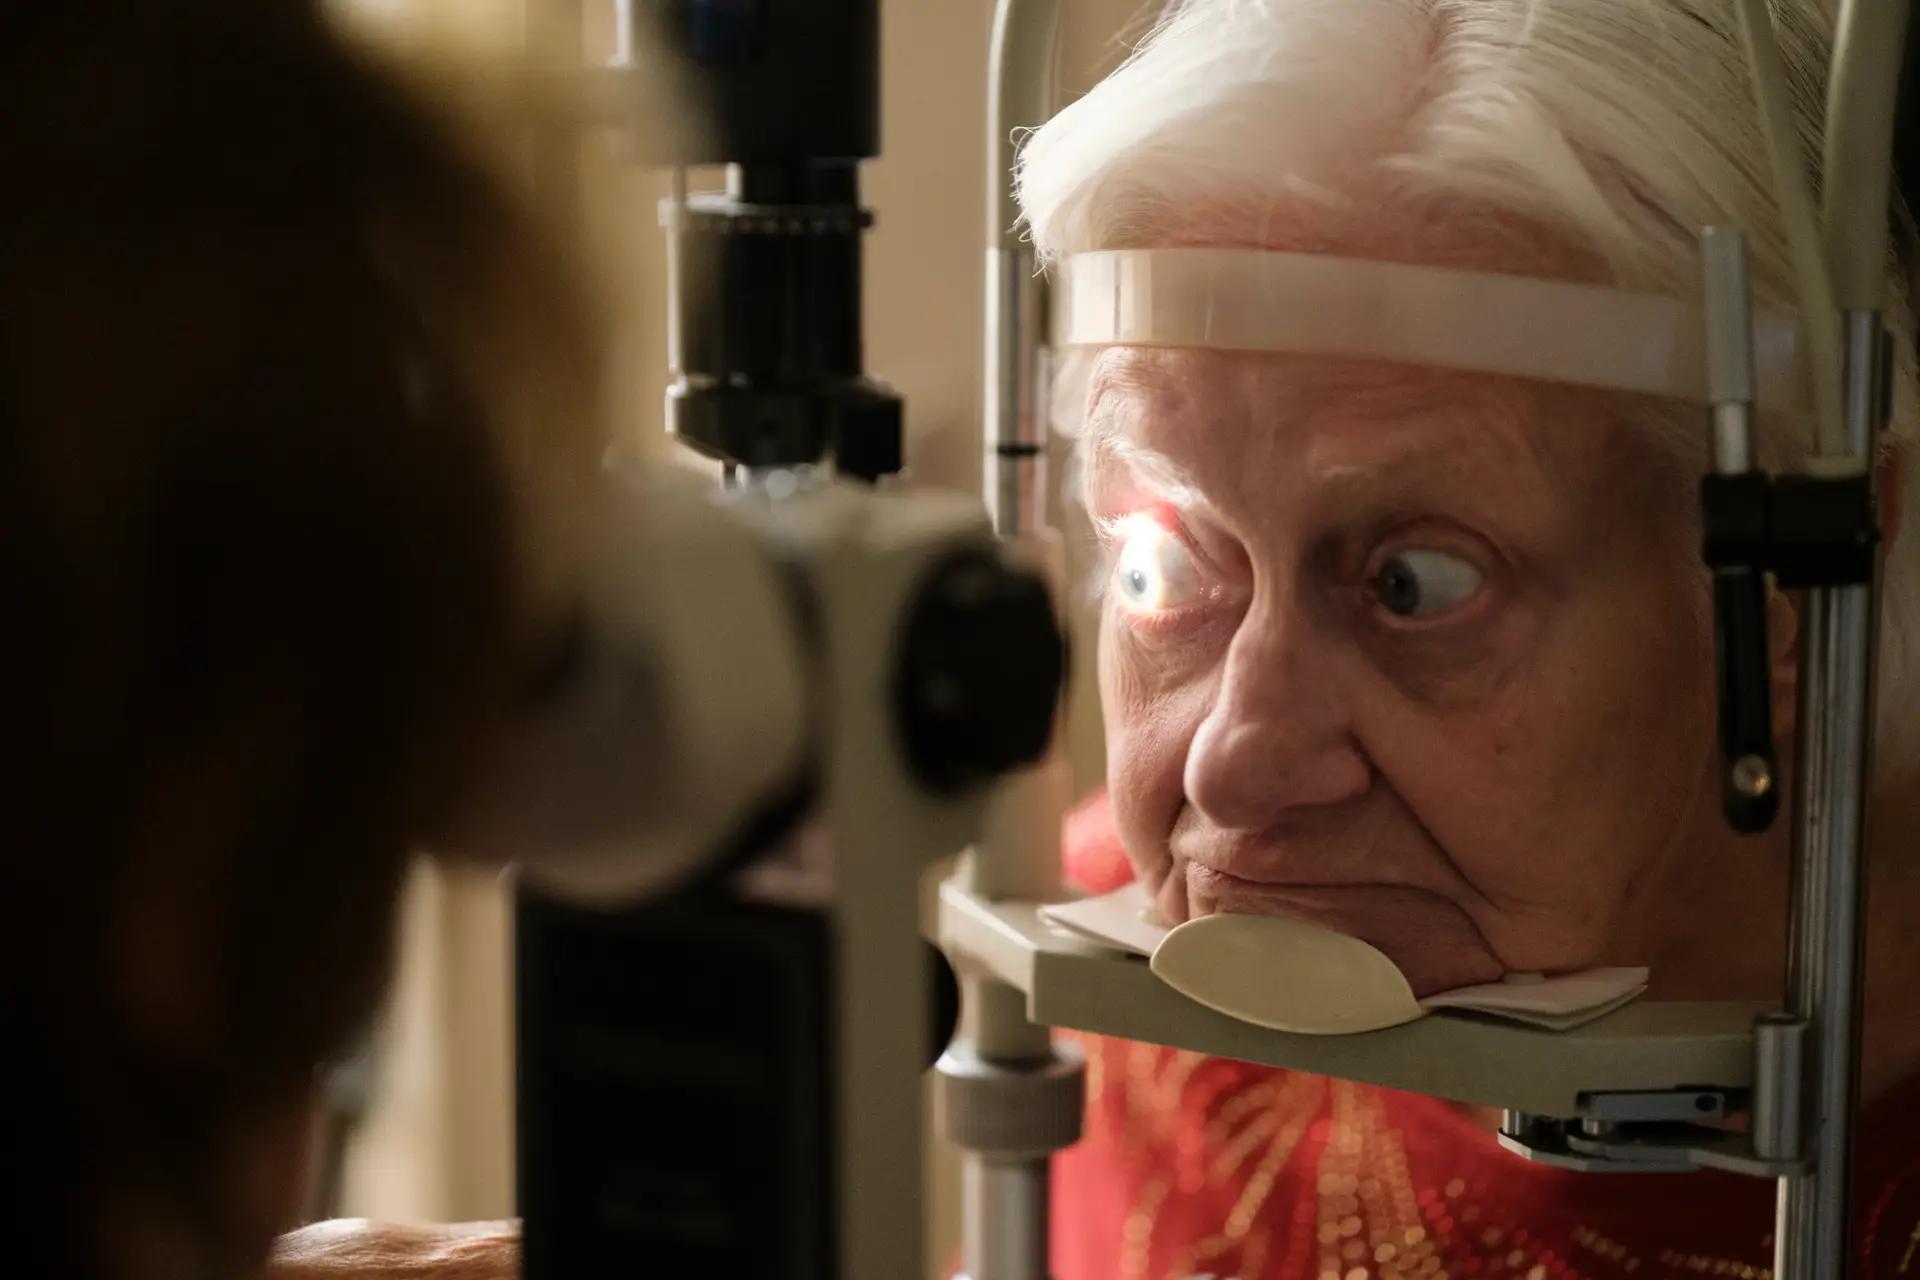 Problemas de visão podem prever demência 12 anos antes do diagnóstico